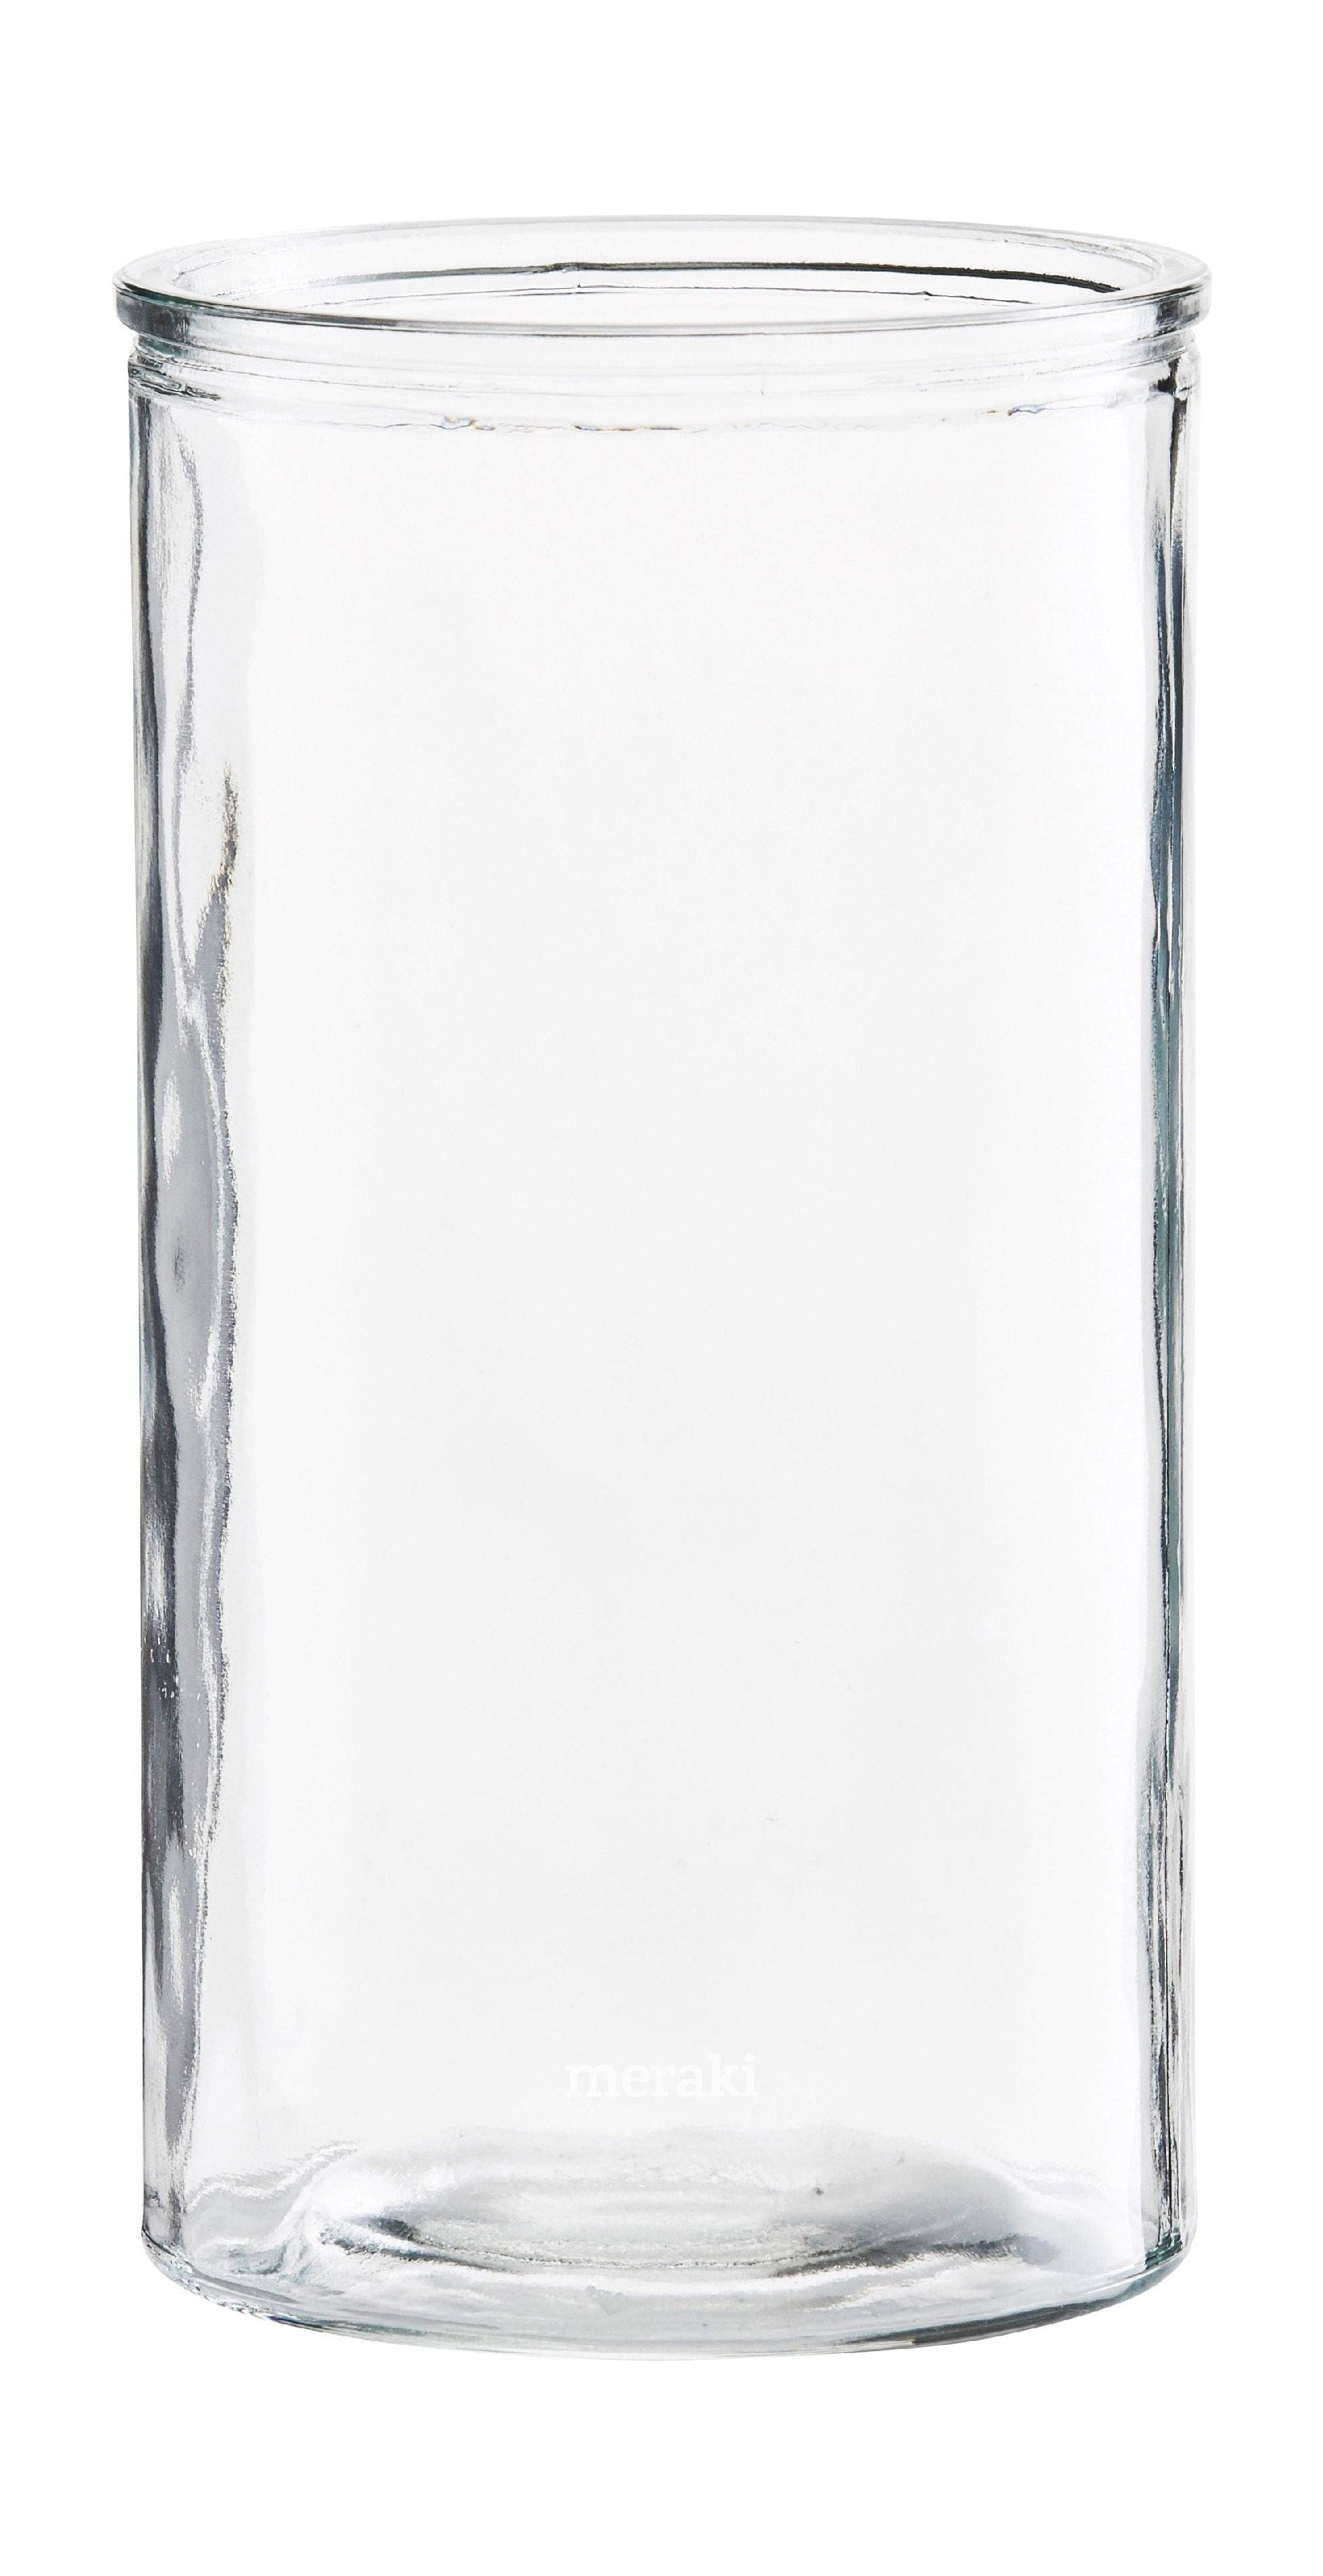 Meraki Cylinder Vase, øx H 13x24